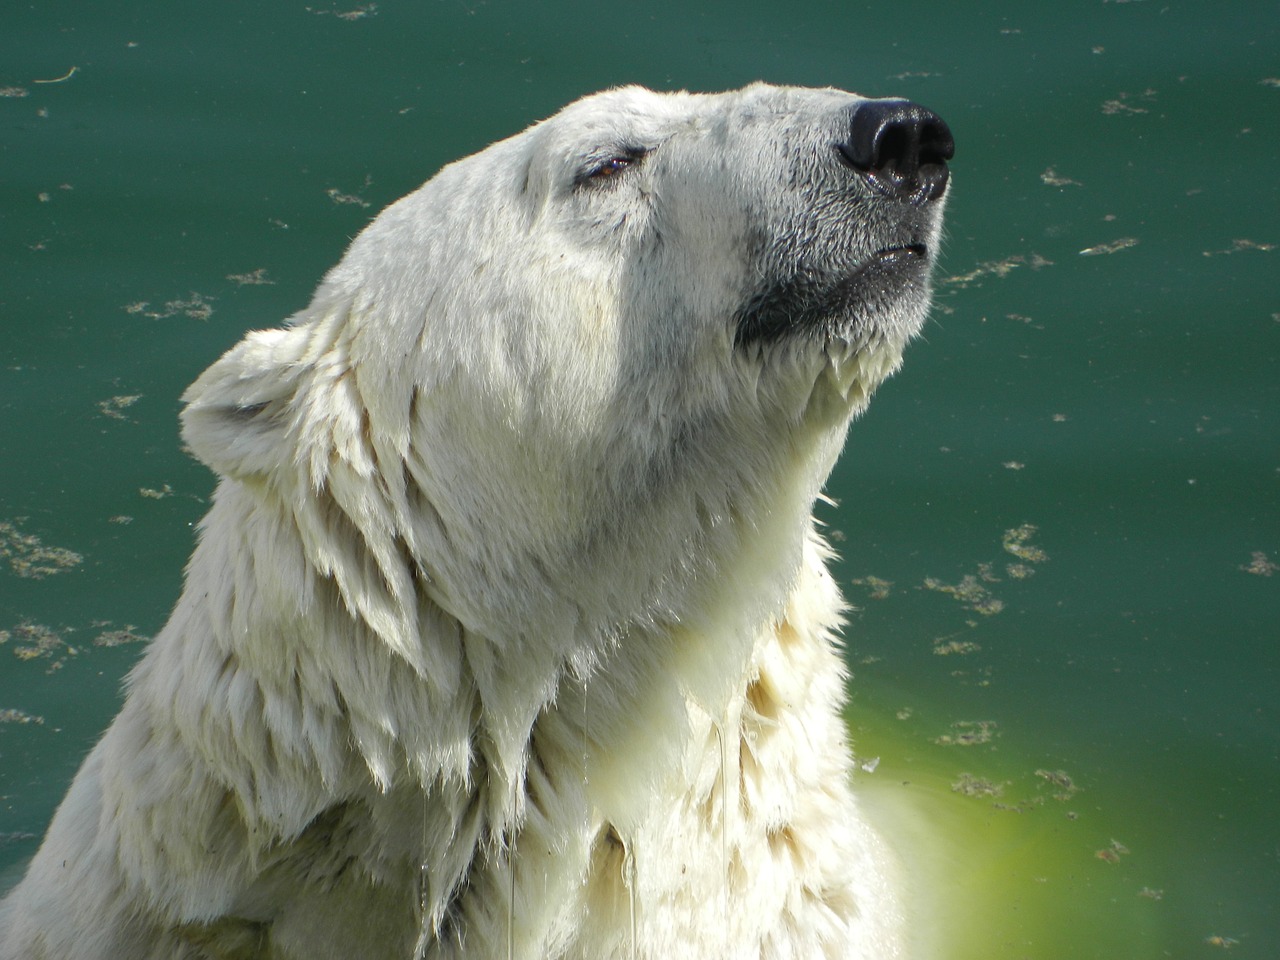 Russie: un ours blanc peinturluré alarme les scientifiques